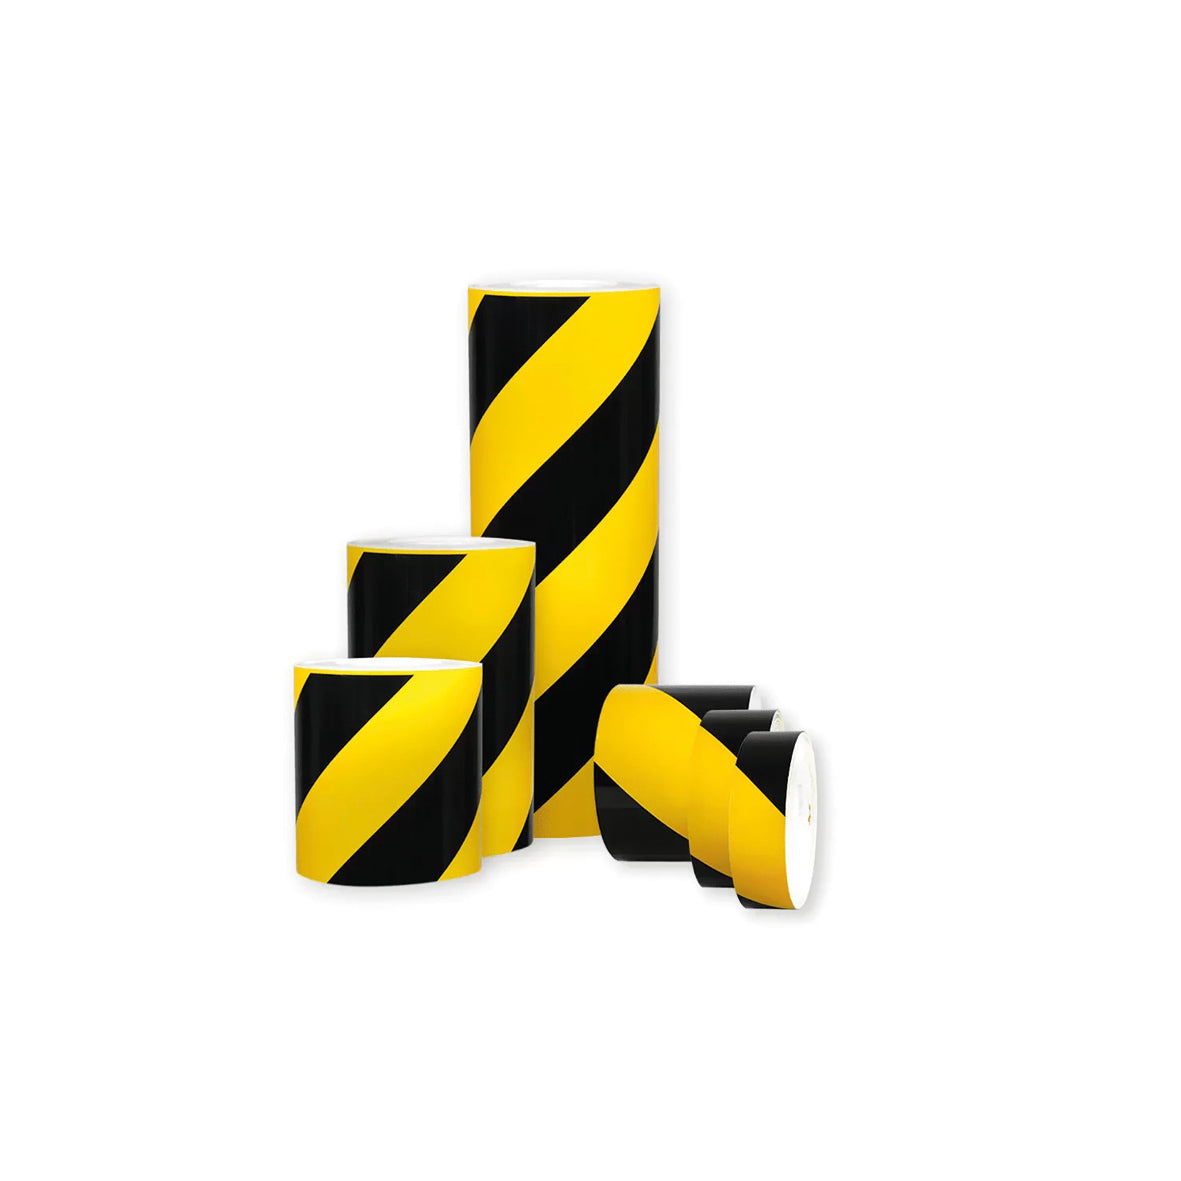 Warnmarkierungsband R1, für Fahrzeuge, R1, gelb-schwarz, 10 m x 300 mm, linksweisend